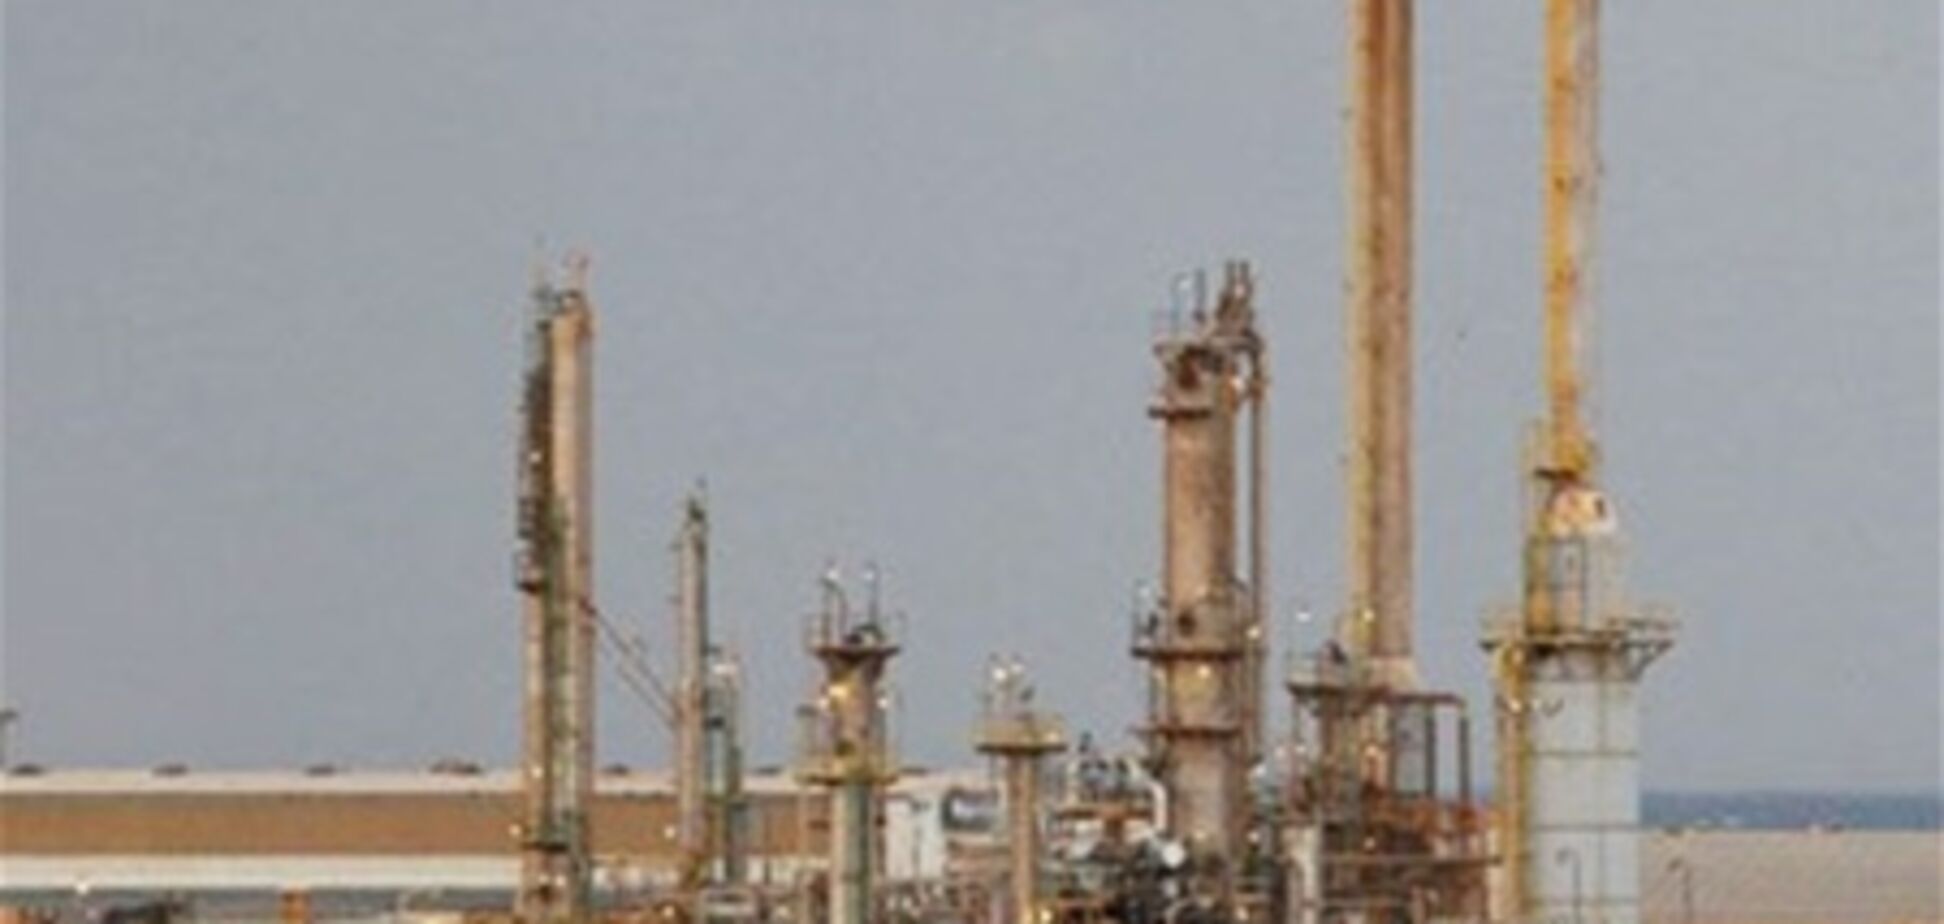 Добыча нефти в Ливии прекращена